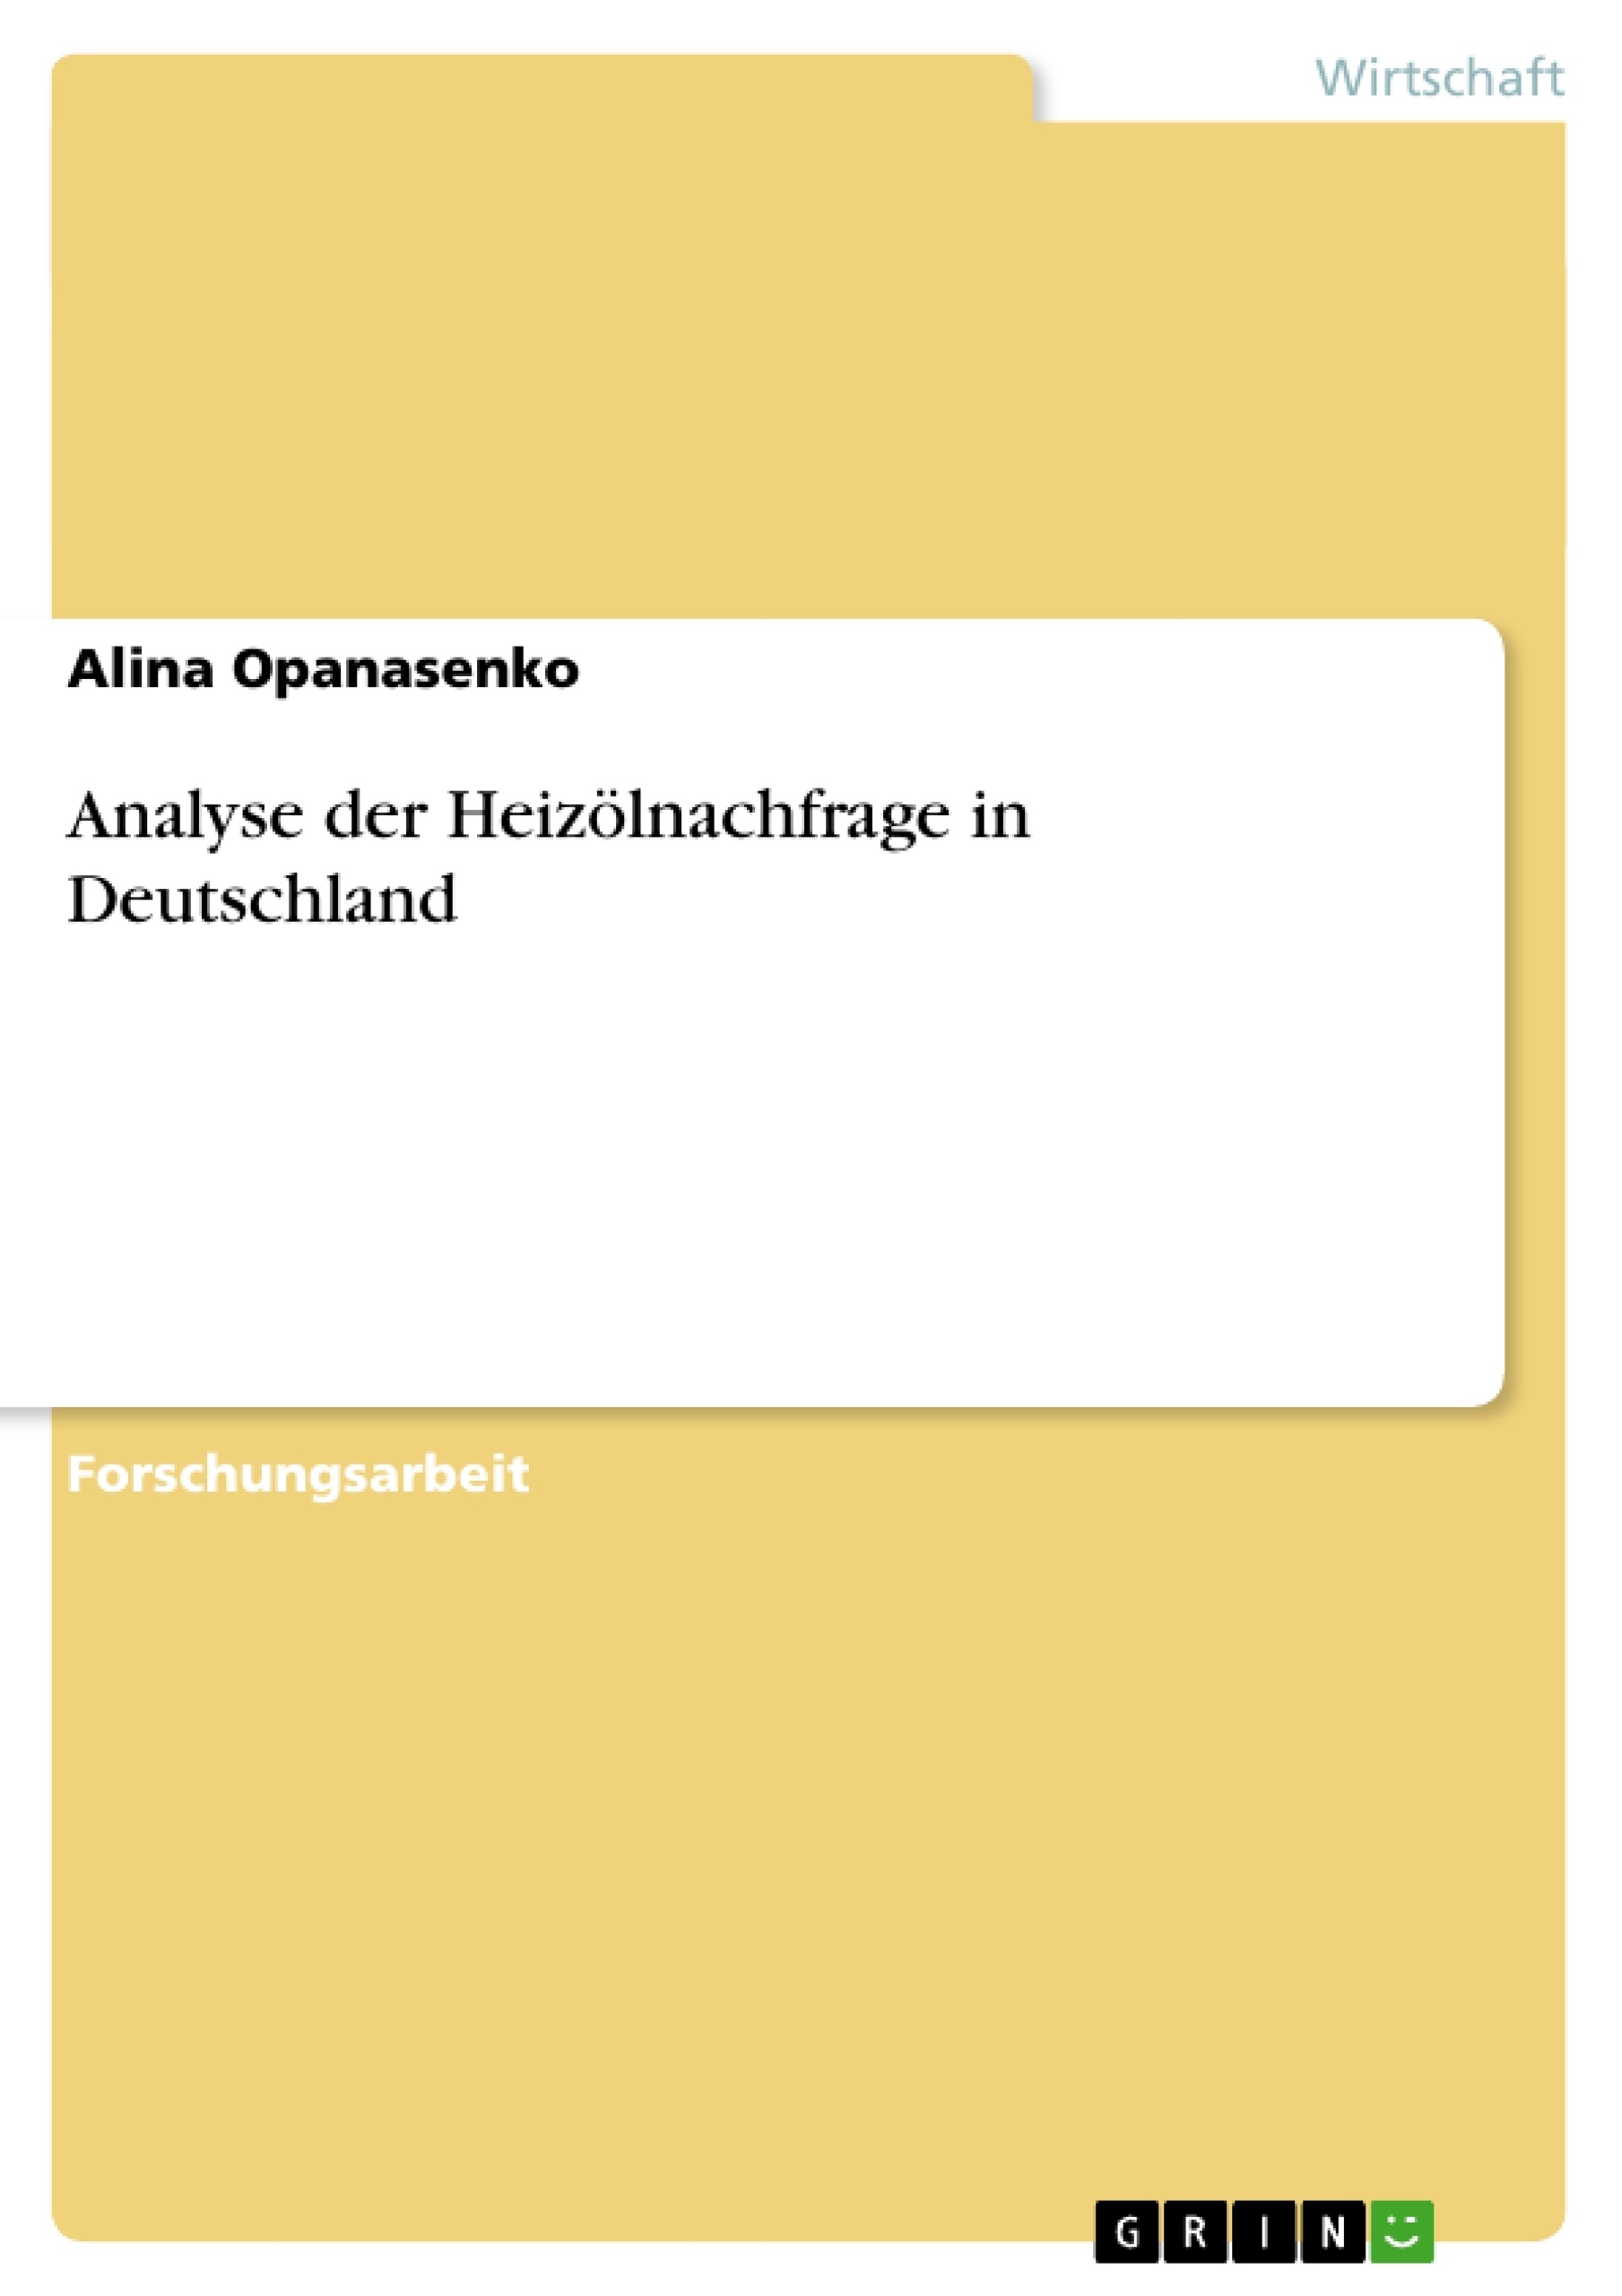 Título: Analyse der Heizölnachfrage in Deutschland